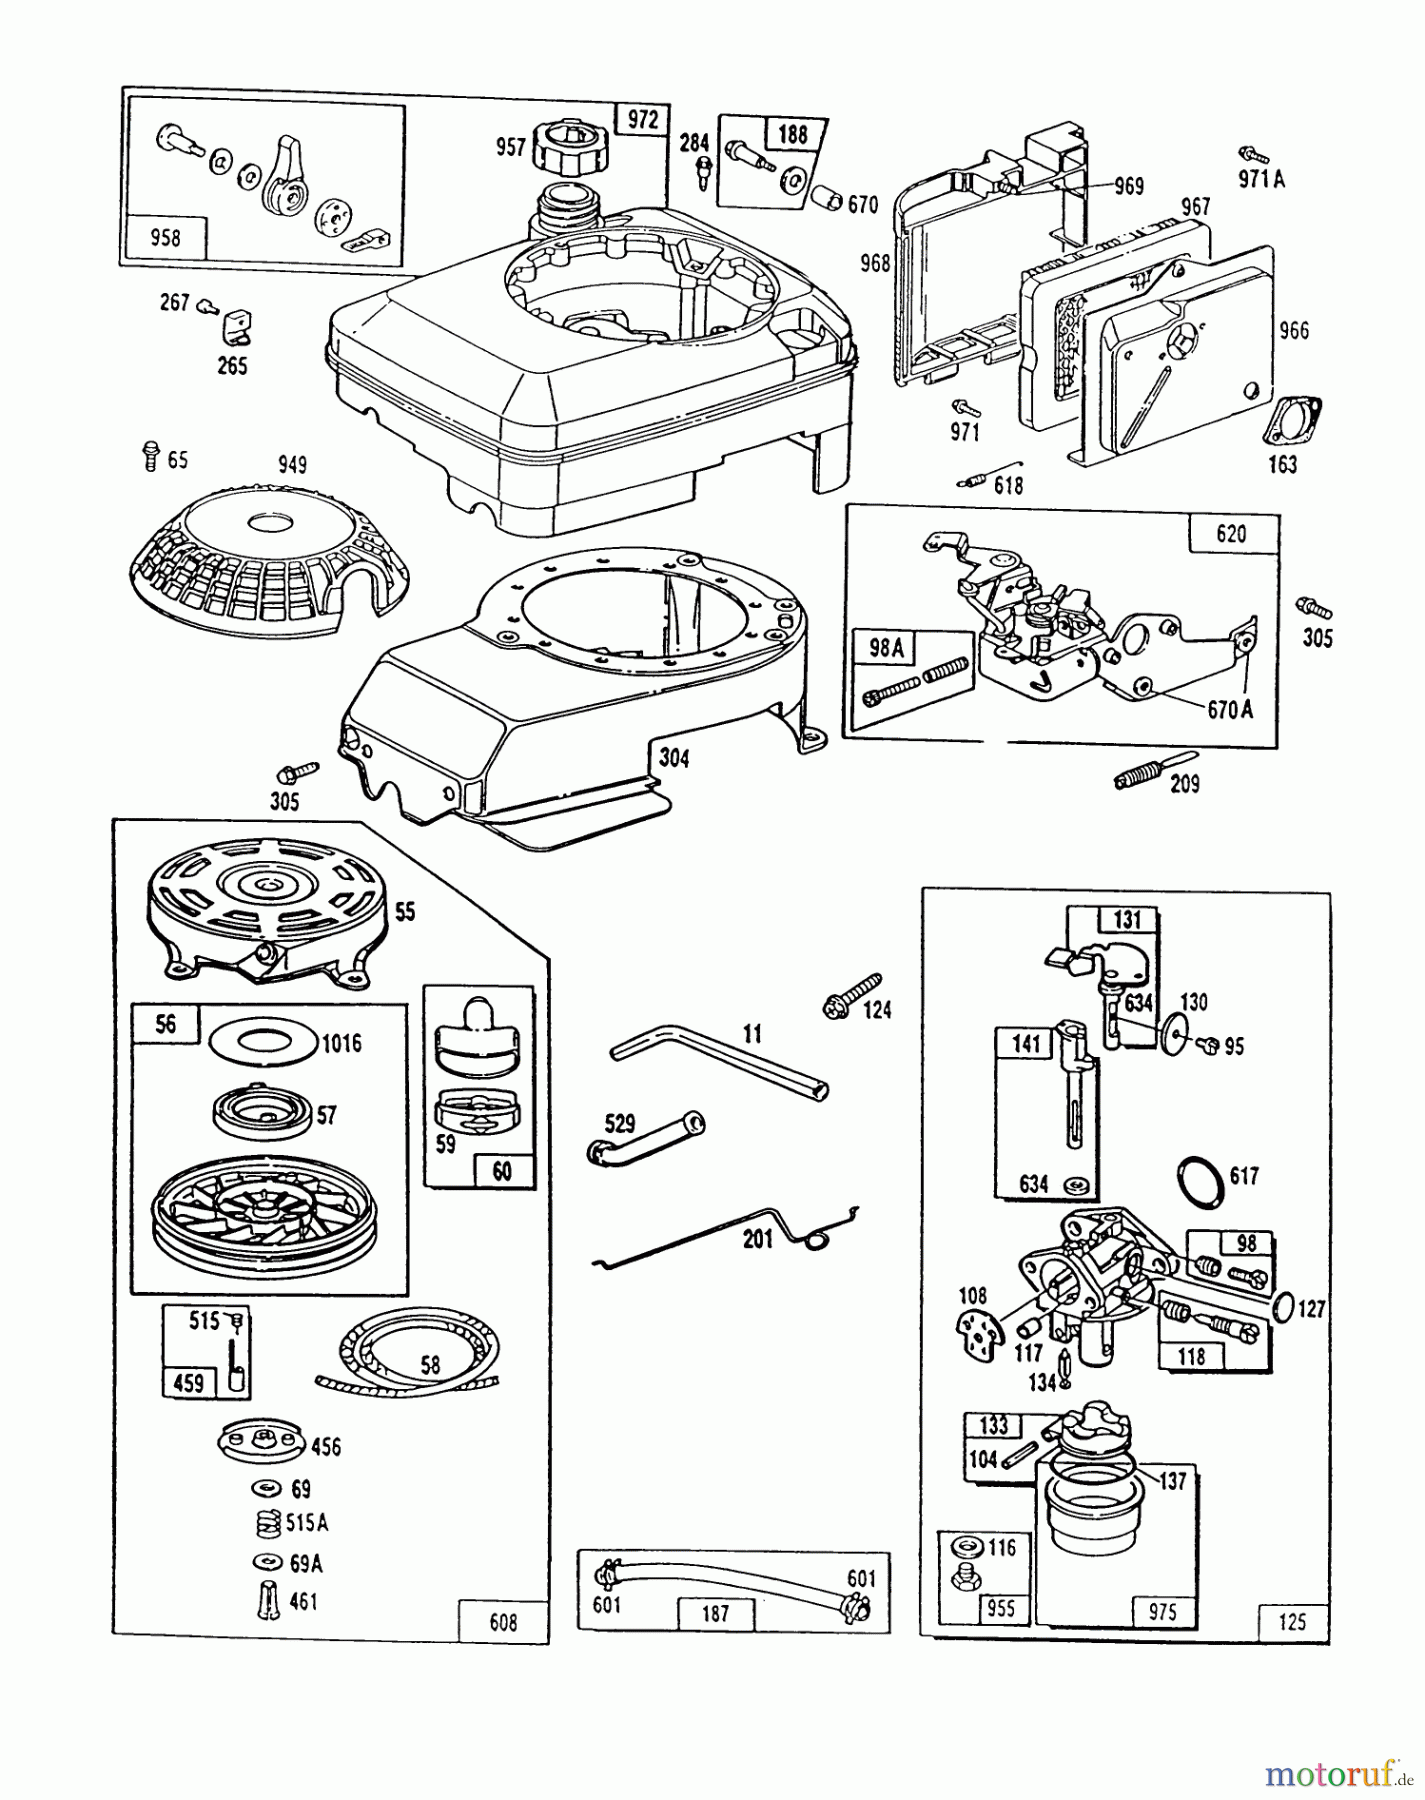  Toro Neu Mowers, Walk-Behind Seite 1 20666 - Toro Lawnmower, 1990 (0000001-0999999) ENGINE MODEL NO. 124702-3115-01 #2